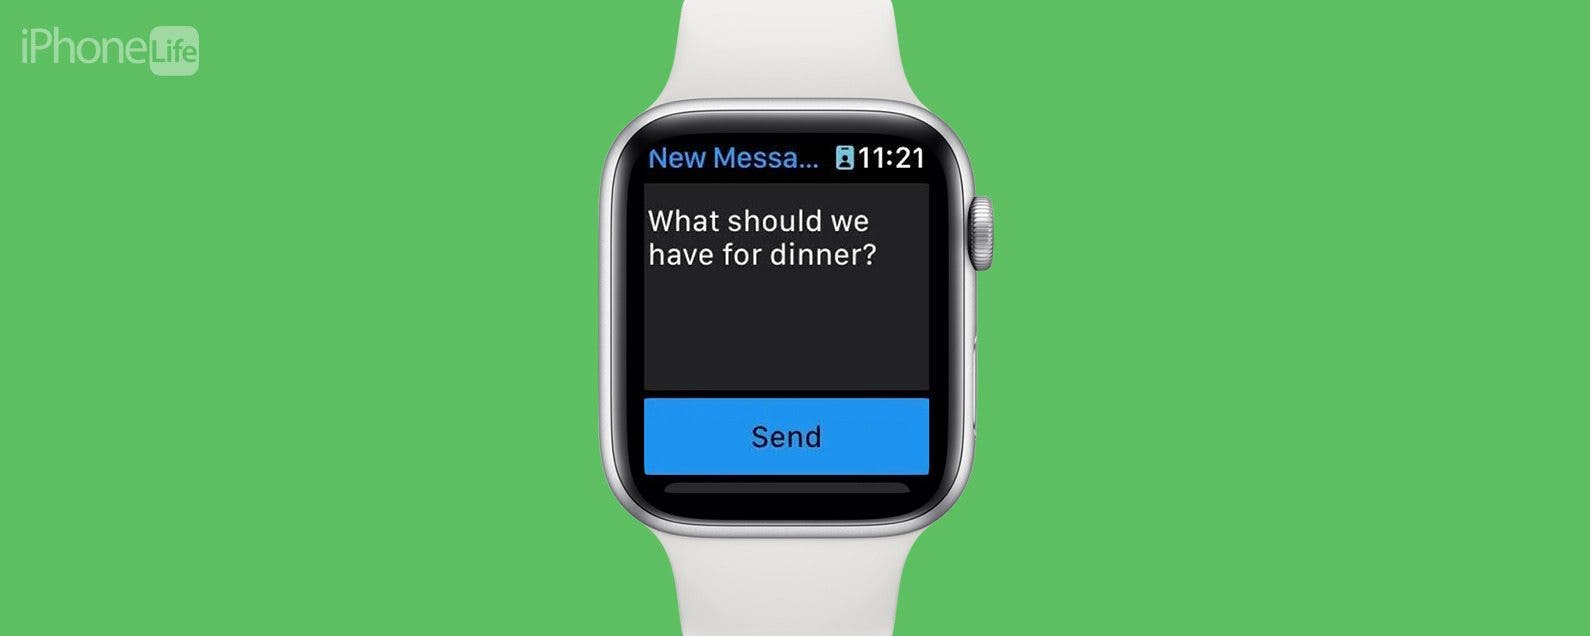 OnePlus watch arabic text